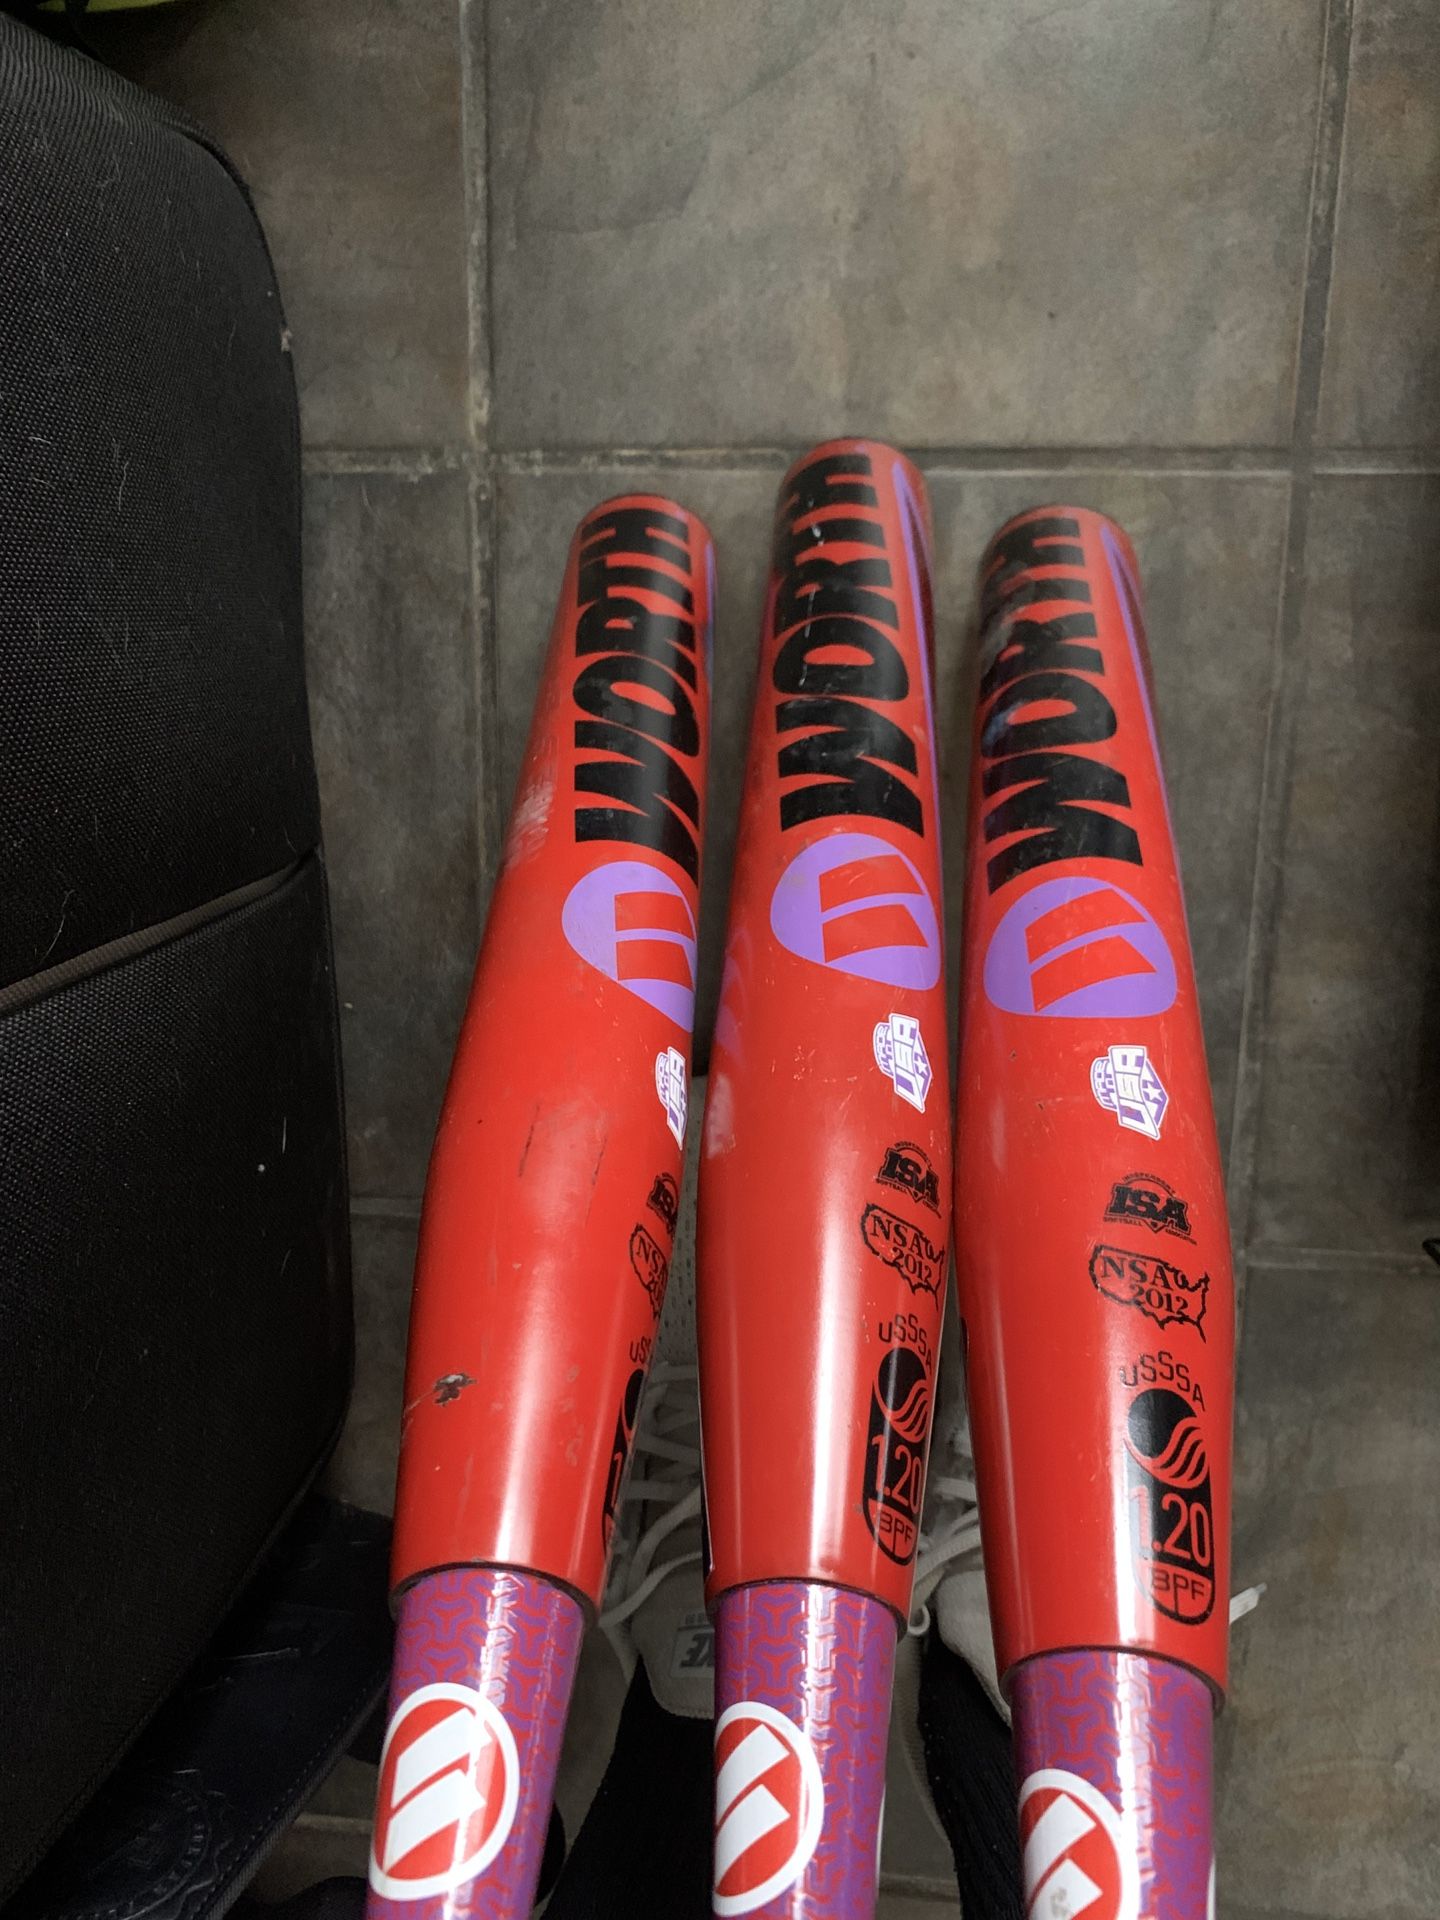 Softball bats